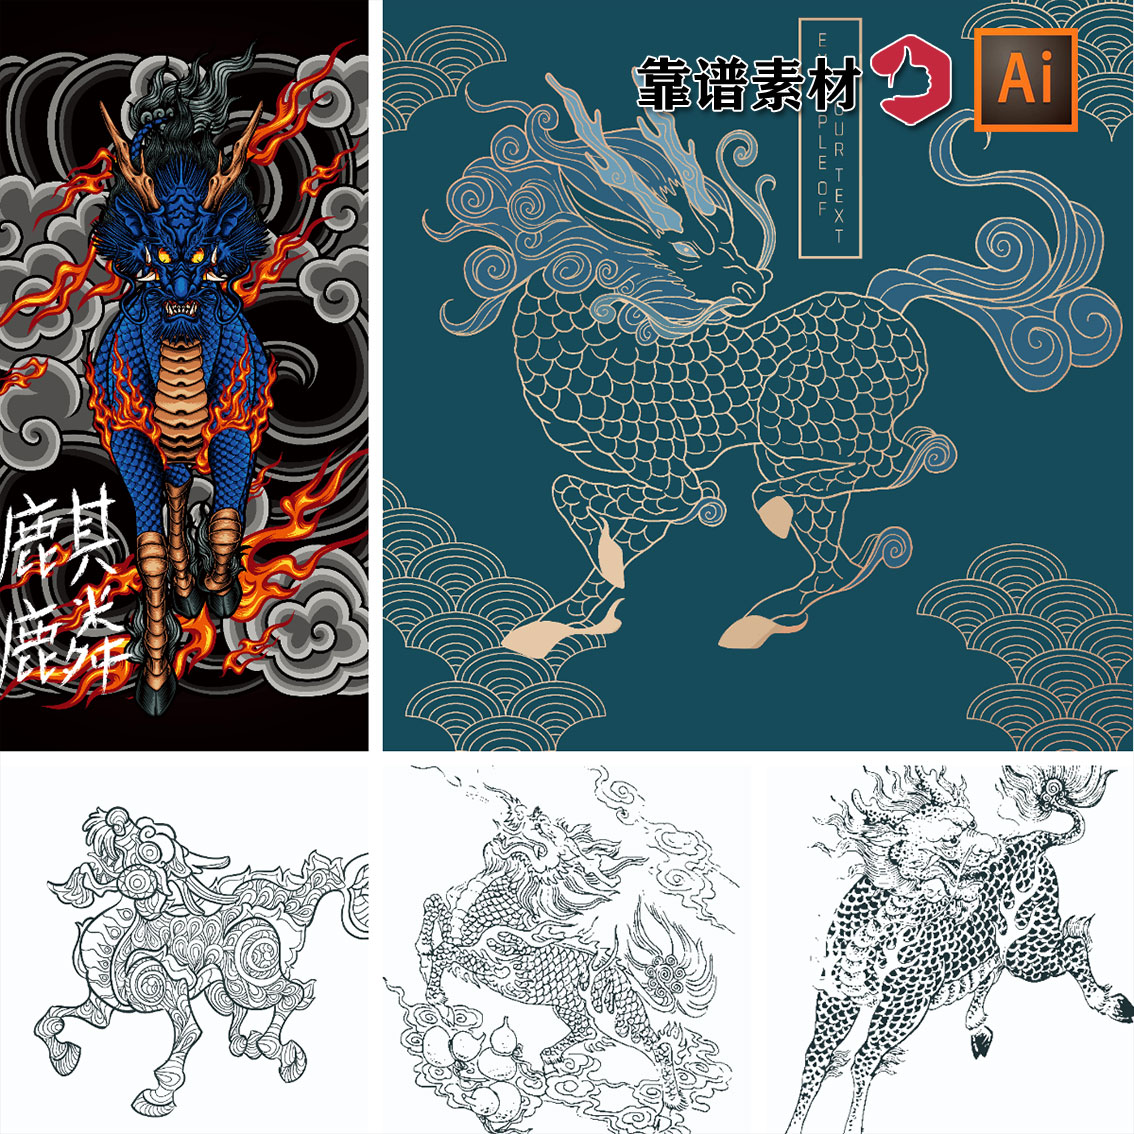 中国传统神兽麒麟图腾图案插画插图AI矢量设计素材